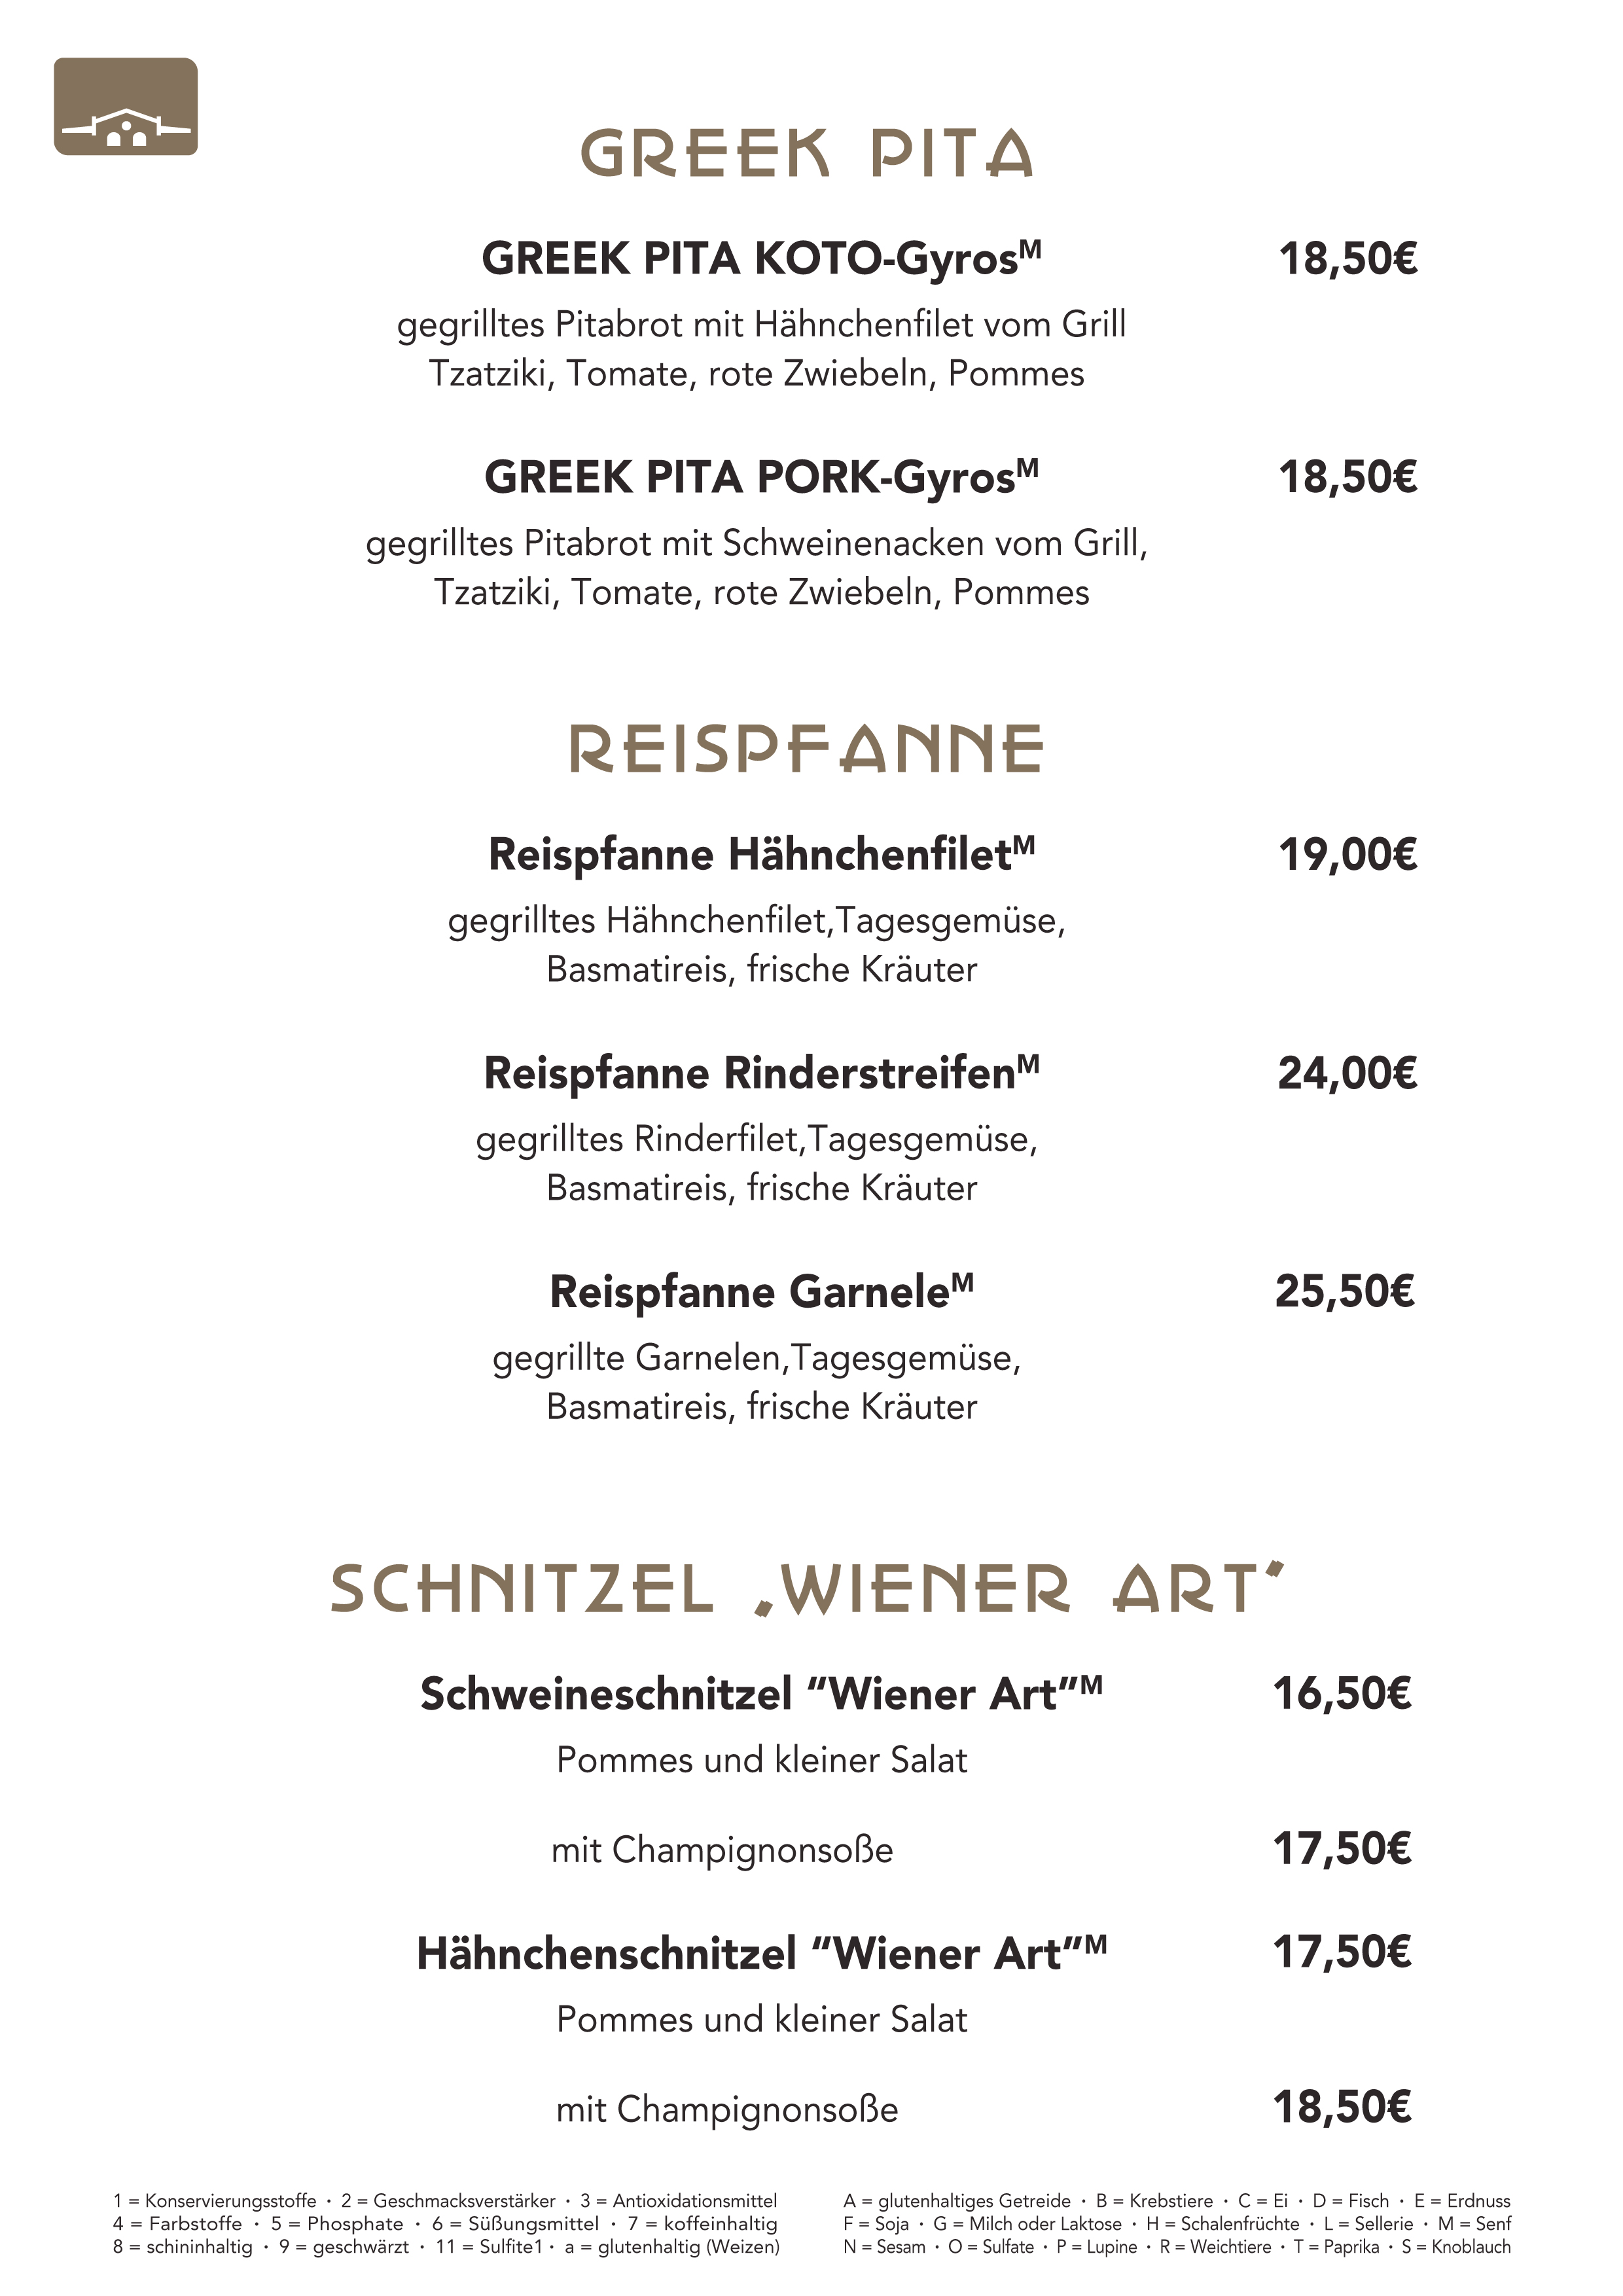 Greek Pita, Reispfanne, Schnitzel, Schweineschnitzel